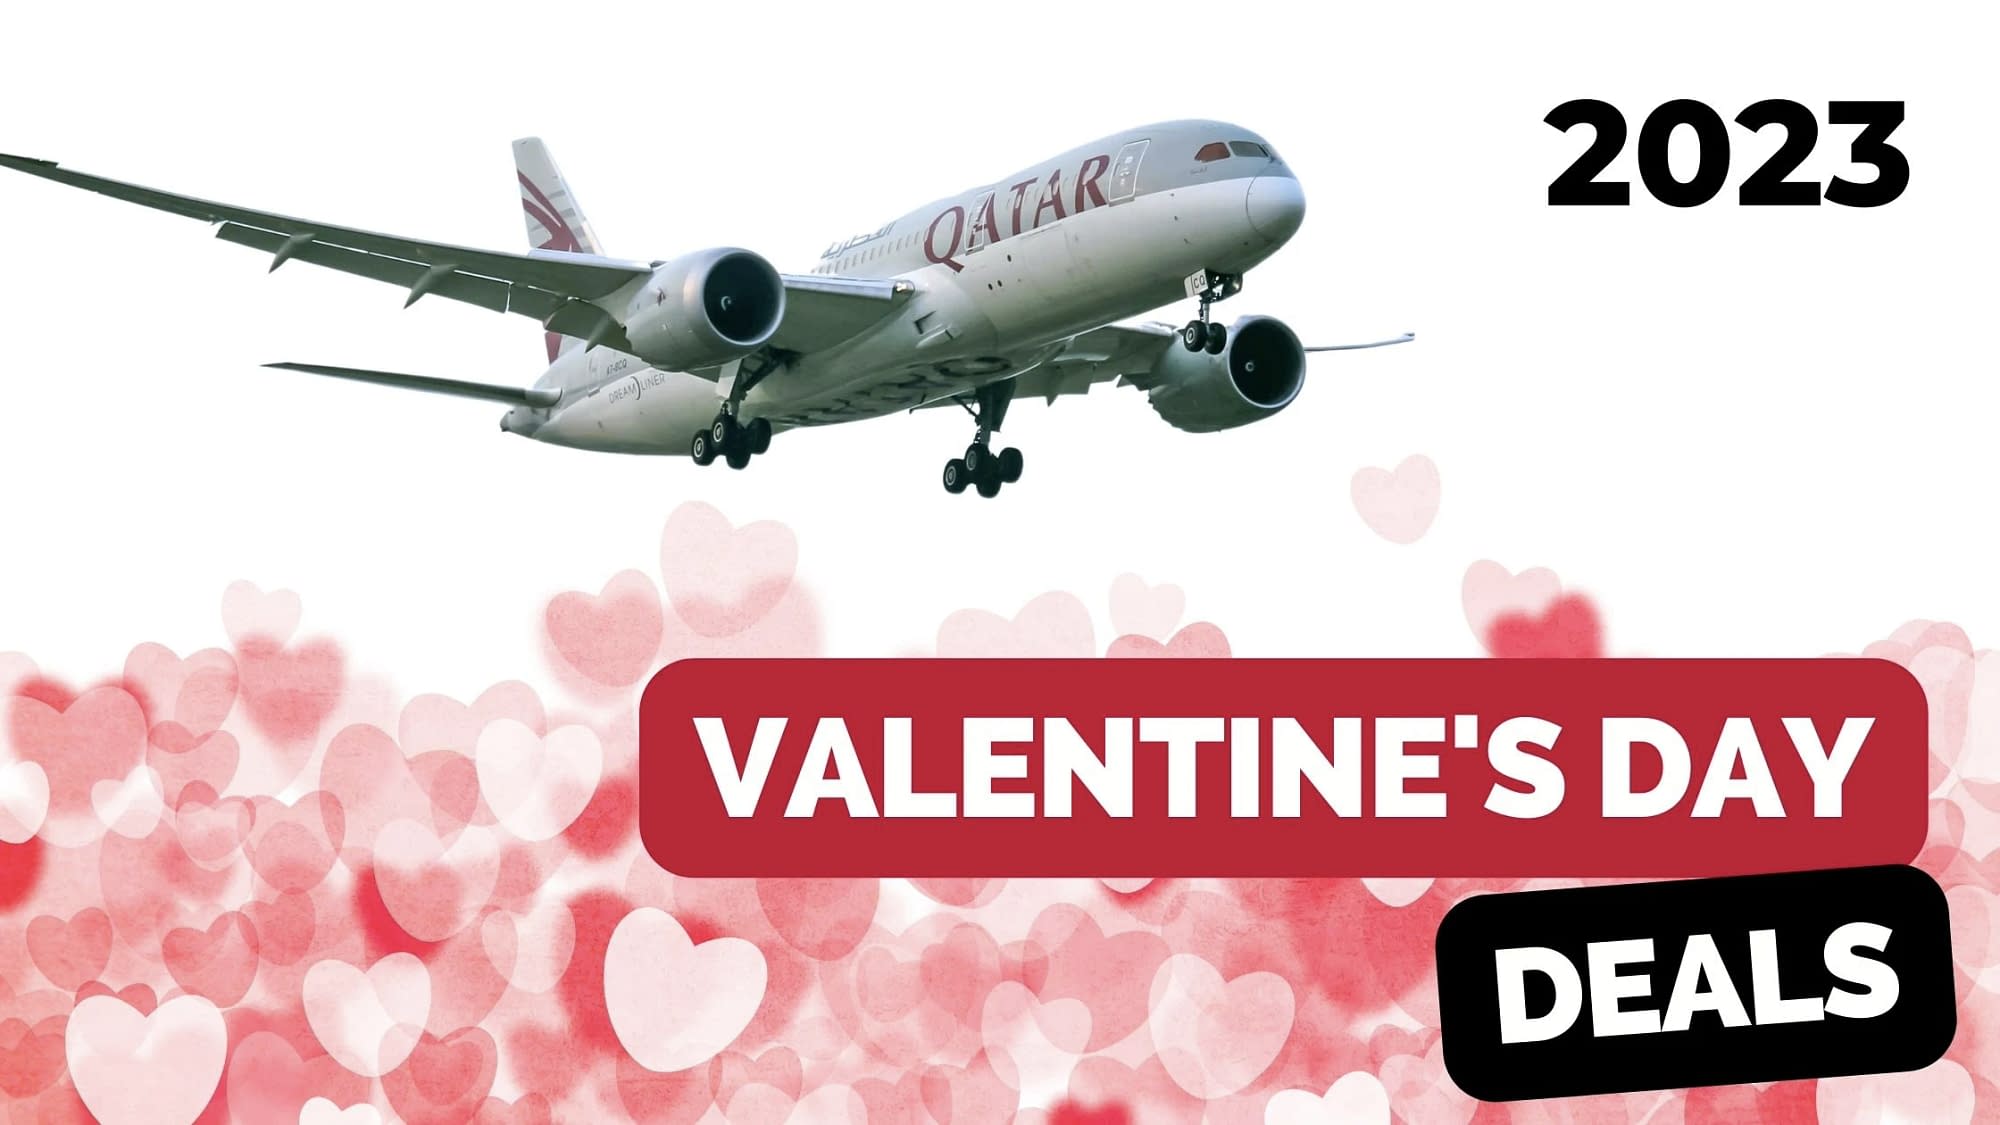 Qatar Airways Valentines Day Deals (2023)